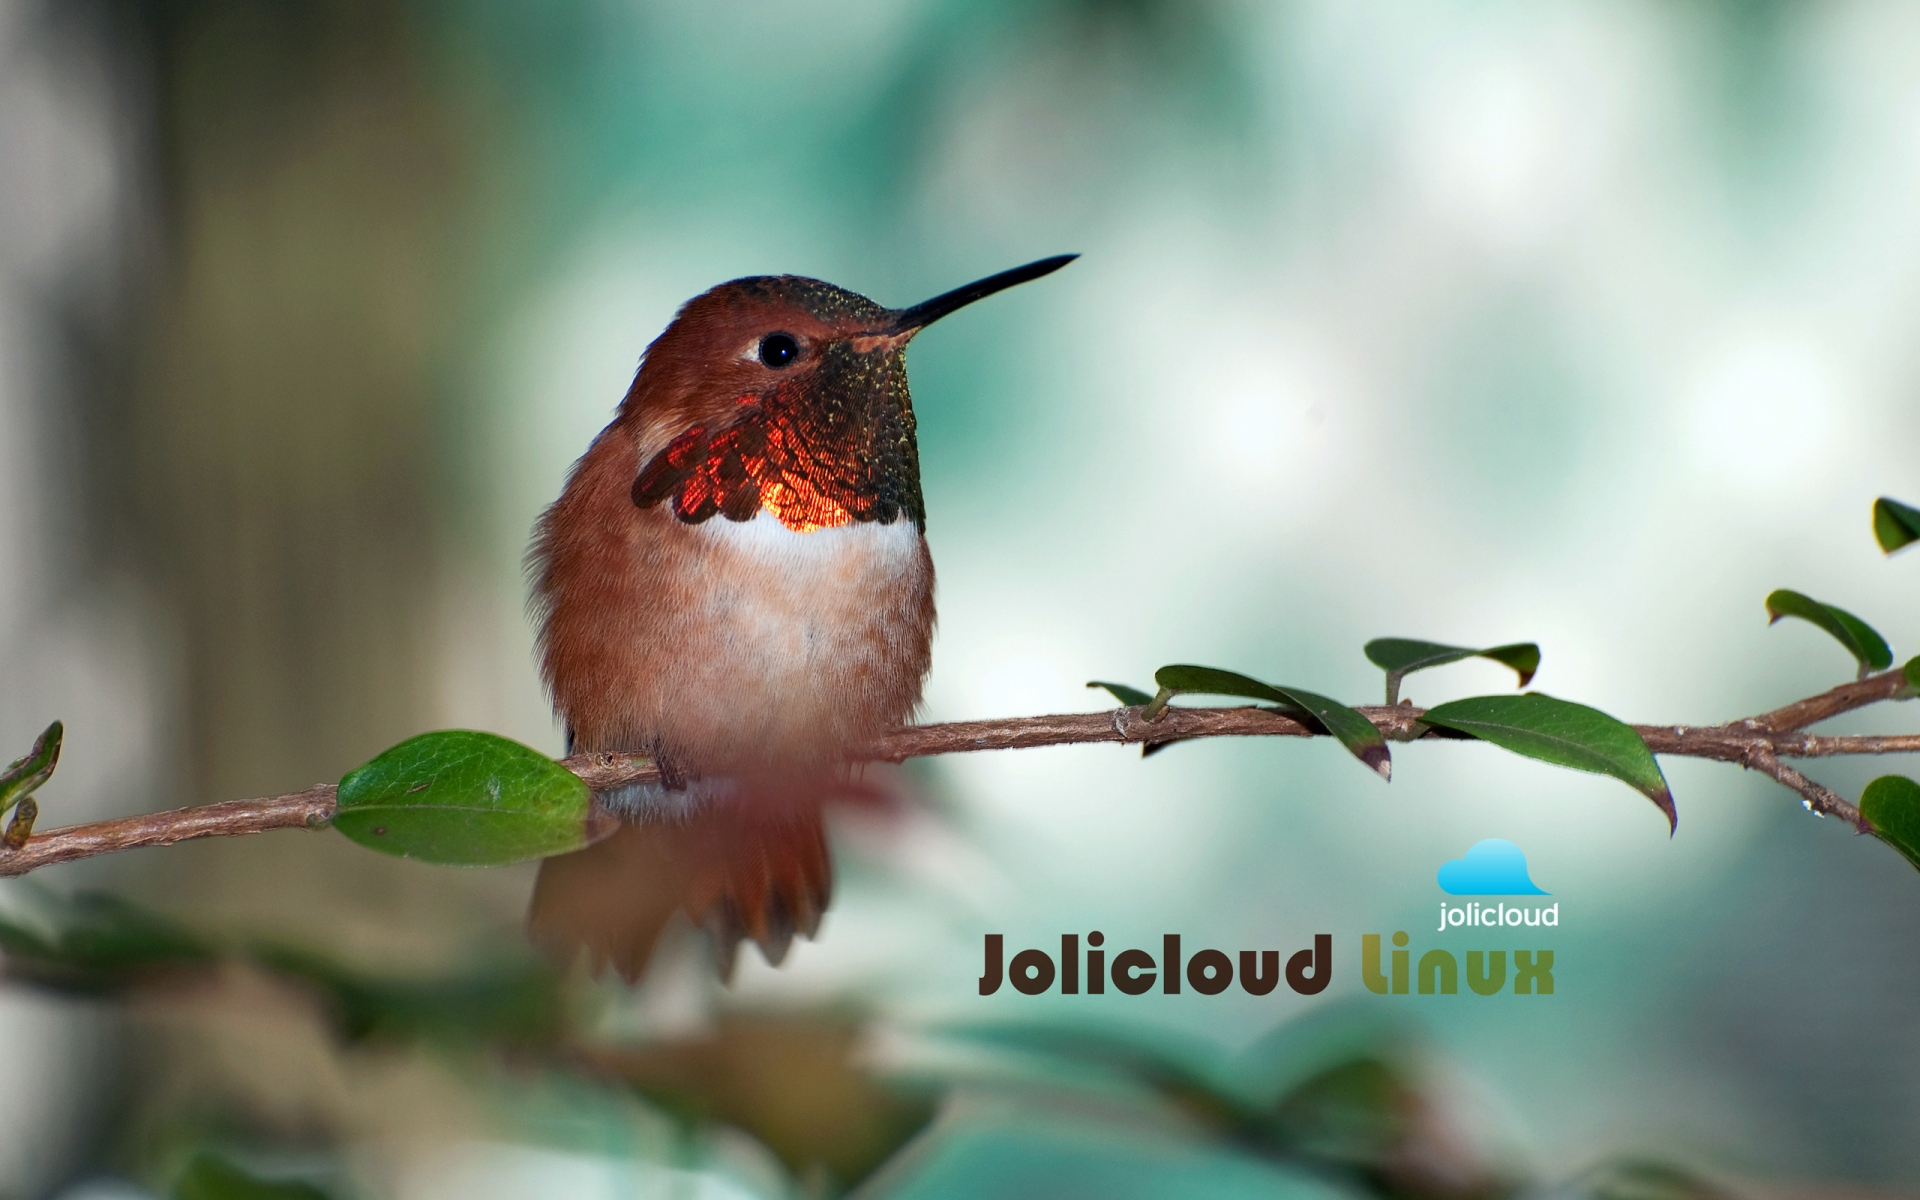 Jolicloud Linux Hummingbird for 1920 x 1200 widescreen resolution